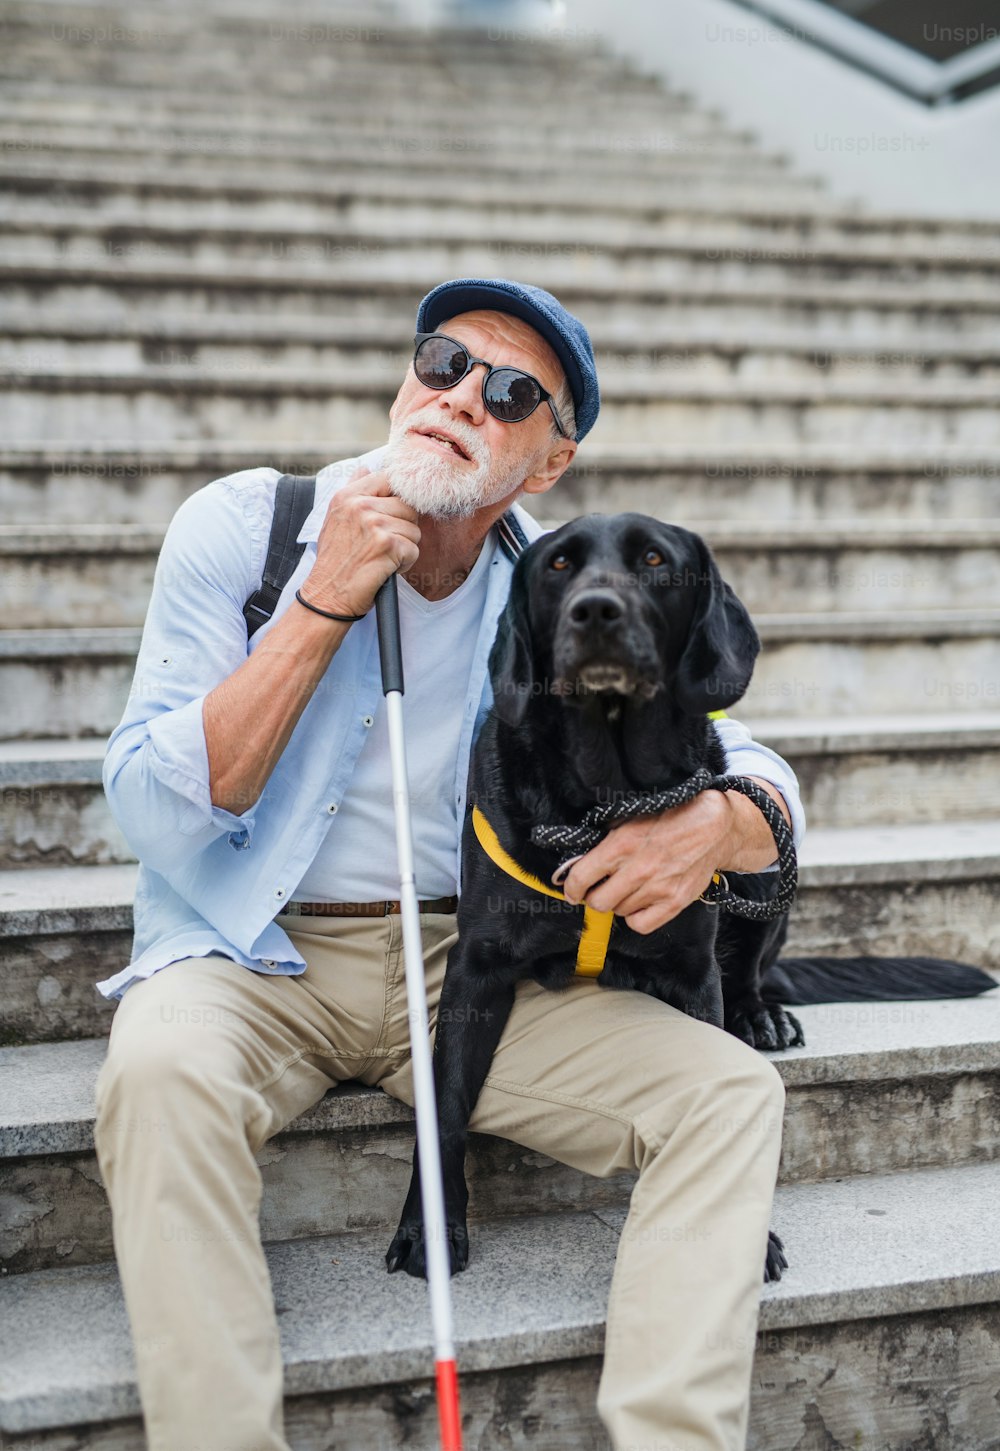 Vue de face d’un homme aveugle âgé avec un chien-guide assis dans les escaliers en ville, au repos.